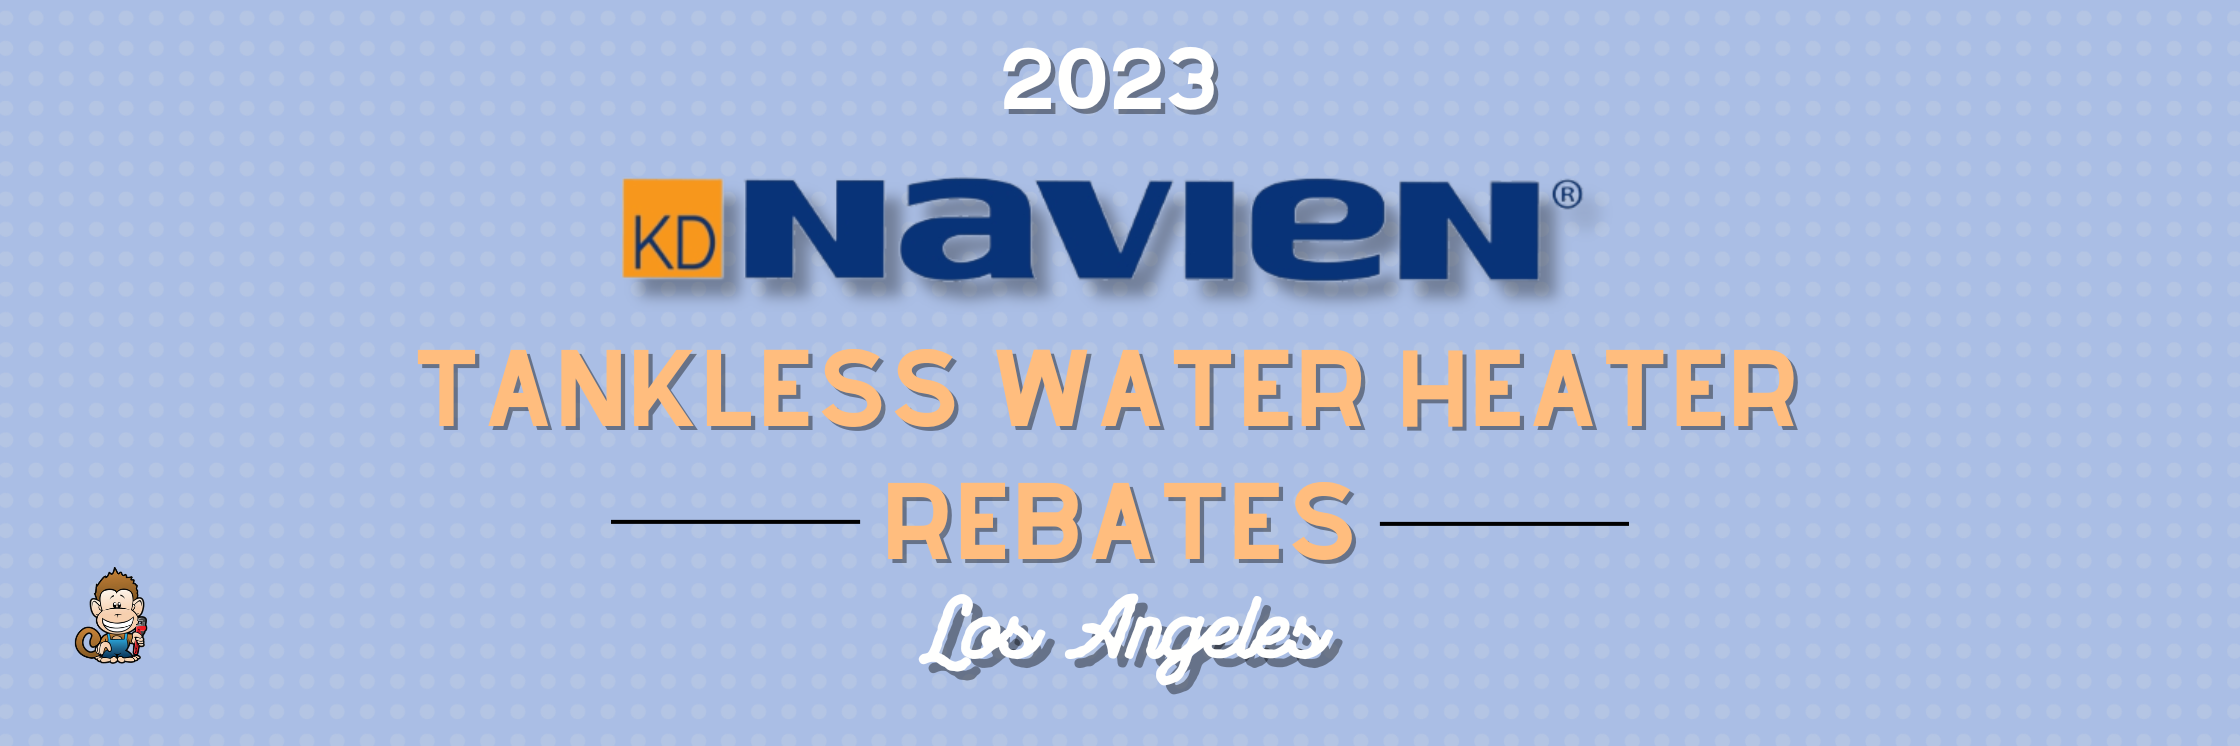 Rebates On Navien Tankless Water Heater